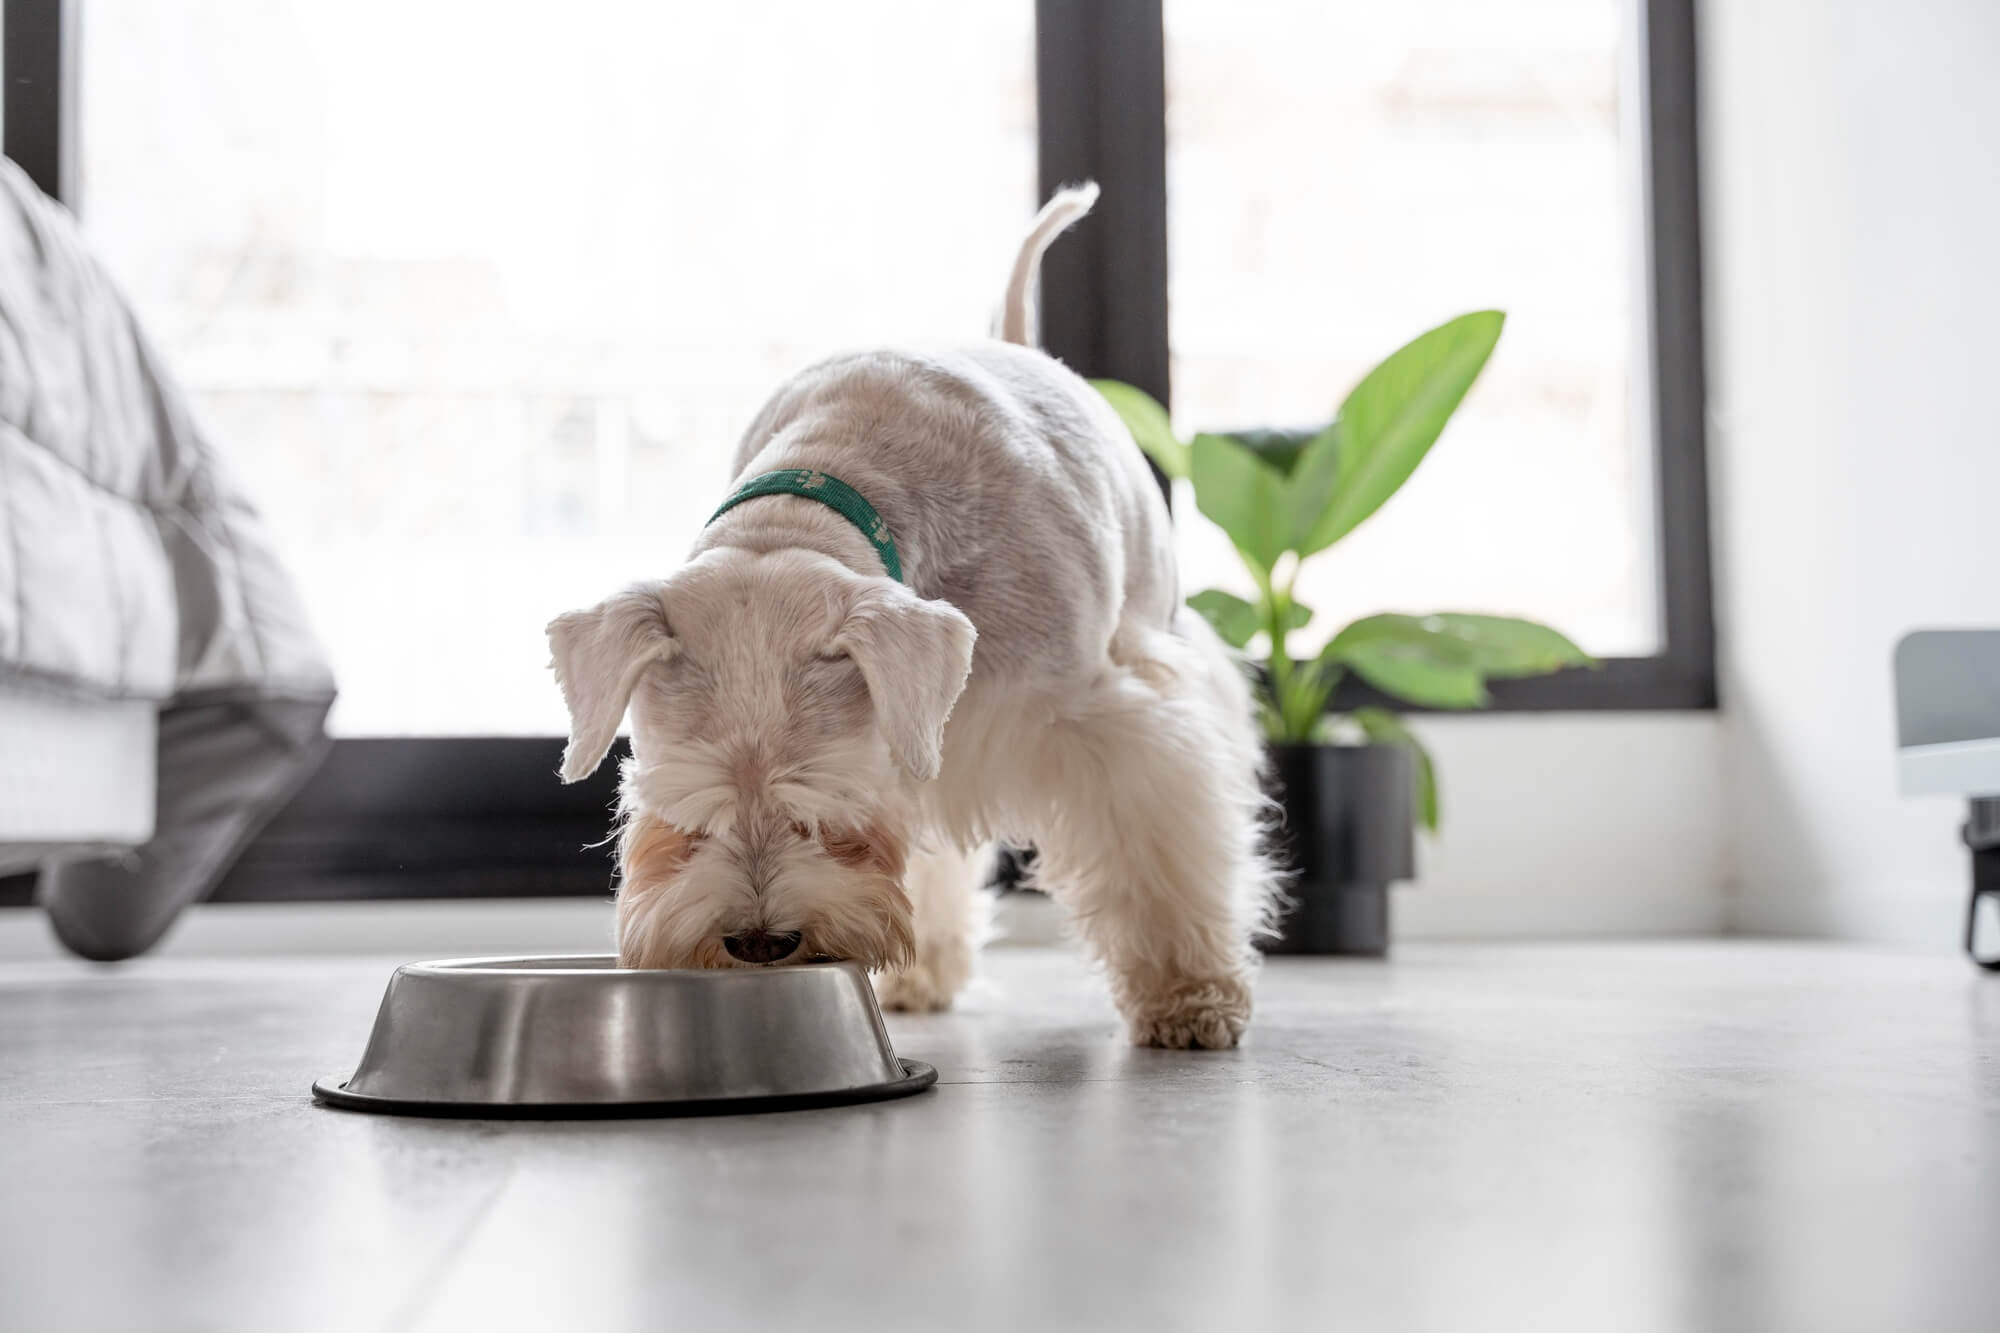 Cachorro branco e marrom comendo ração em um pote de metal, em ambiente interno.
